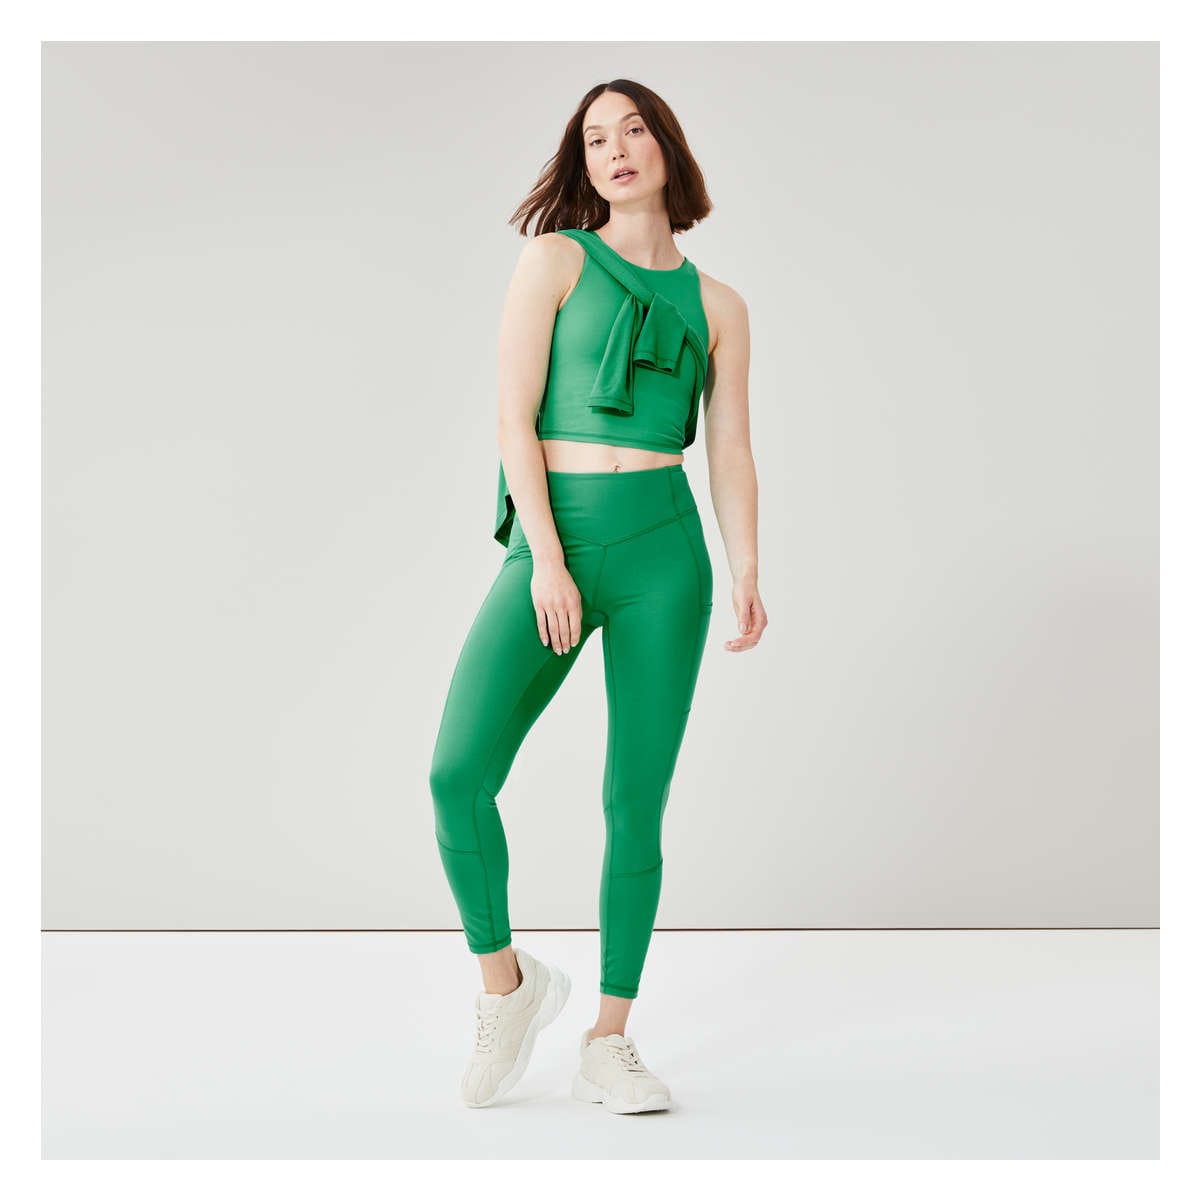 Meshki | Pants & Jumpsuits | Nwt Meshki Venus V Back Leggings Bright Green  Size Xl | Poshmark